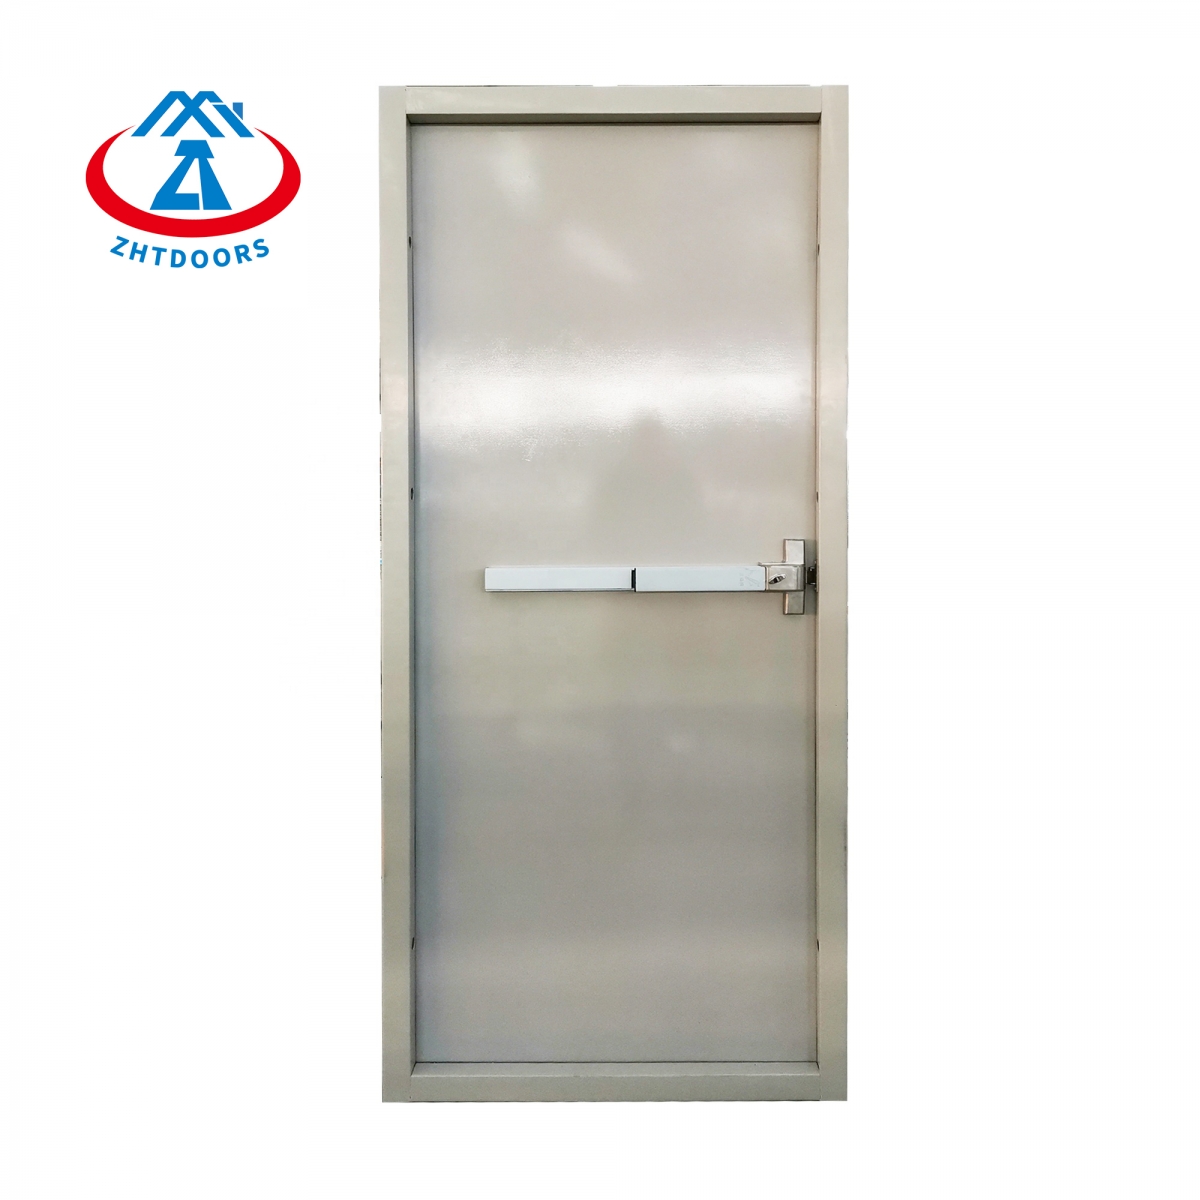 Exterior Fireproof Door-ZTFIRE Door- Fire Door,Fireproof Door,Fire rated Door,Fire Resistant Door,Steel Door,Metal Door,Exit Door